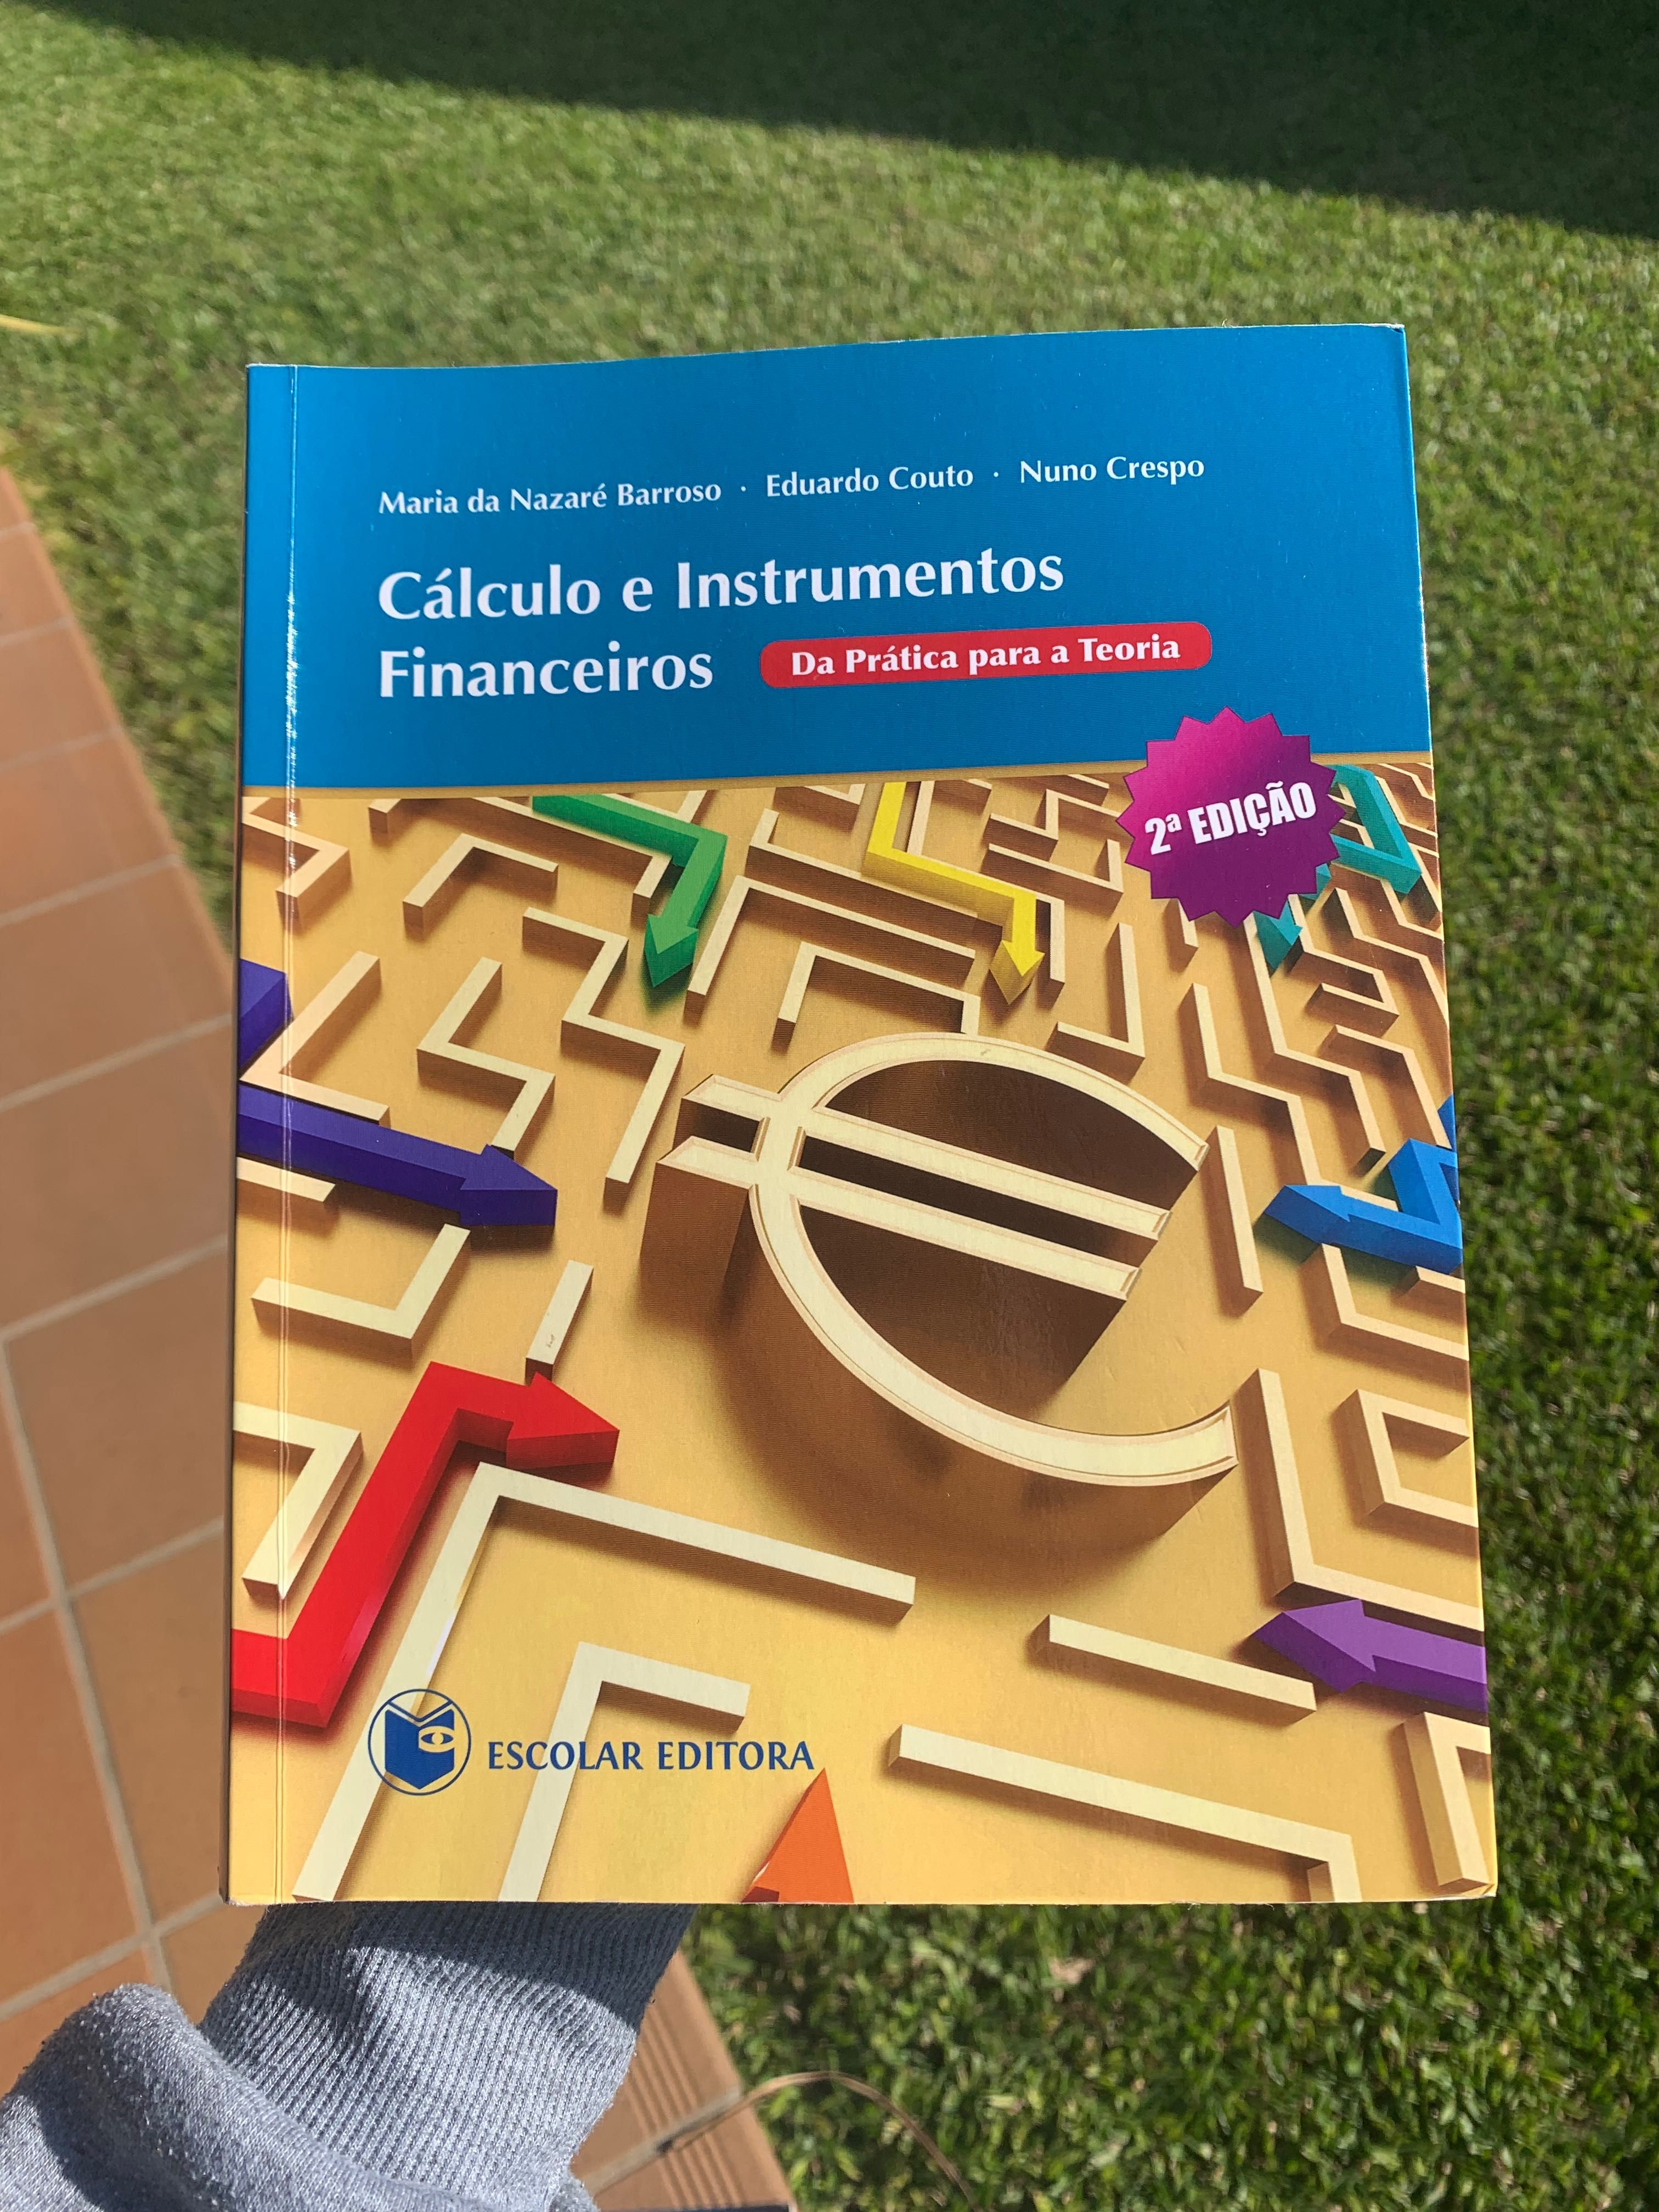 Livro Cálculo e Instrumentos Financeiros, Escolar Editora - 2.a edição